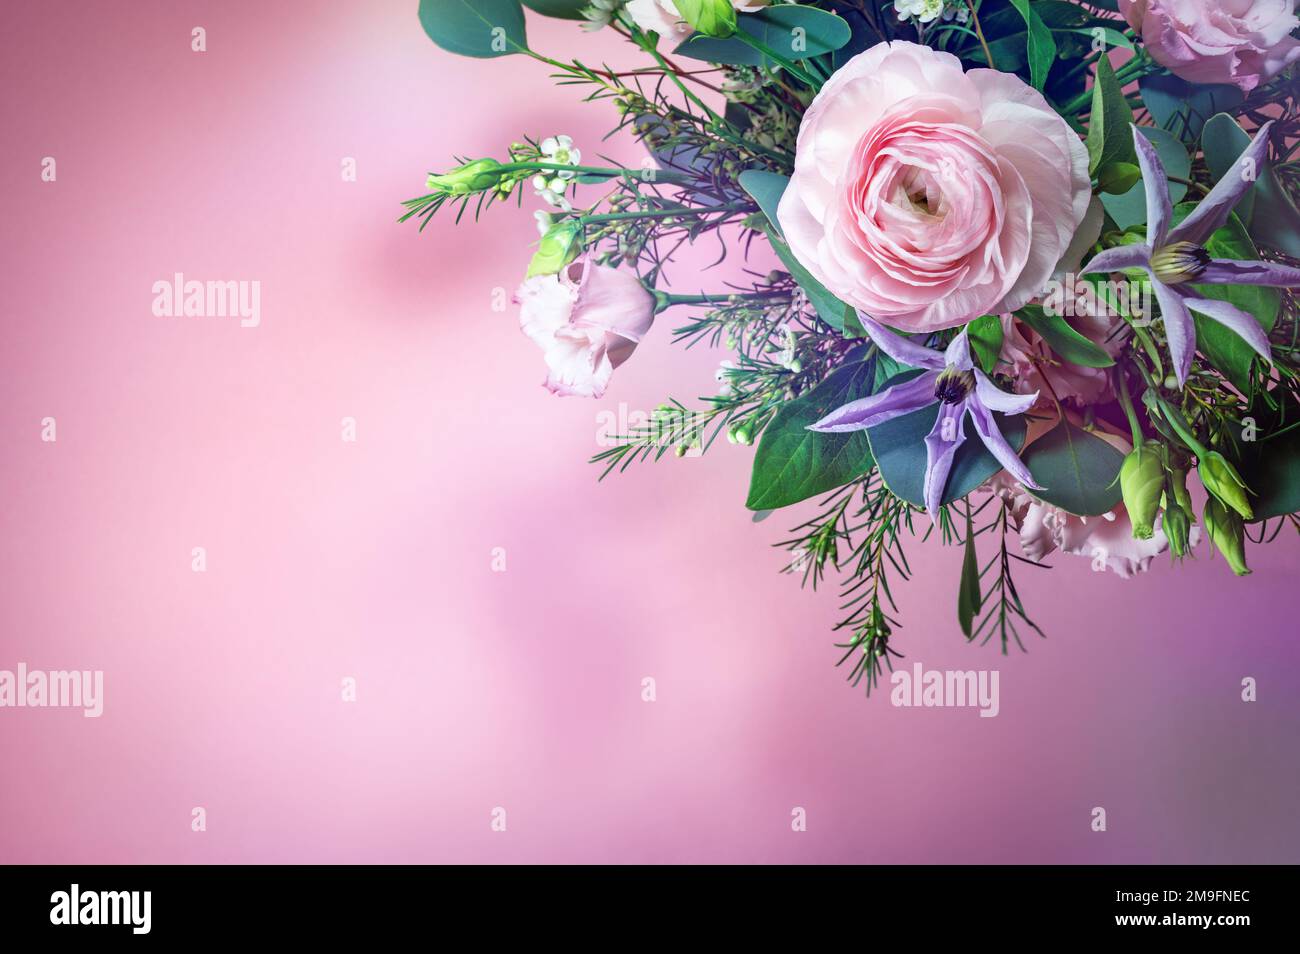 Bouquet con fiori di rosa e blu nell'angolo di uno sfondo rosa, biglietto di auguri per vacanze come San Valentino o la giornata della madre, spazio copia, selezionato Foto Stock